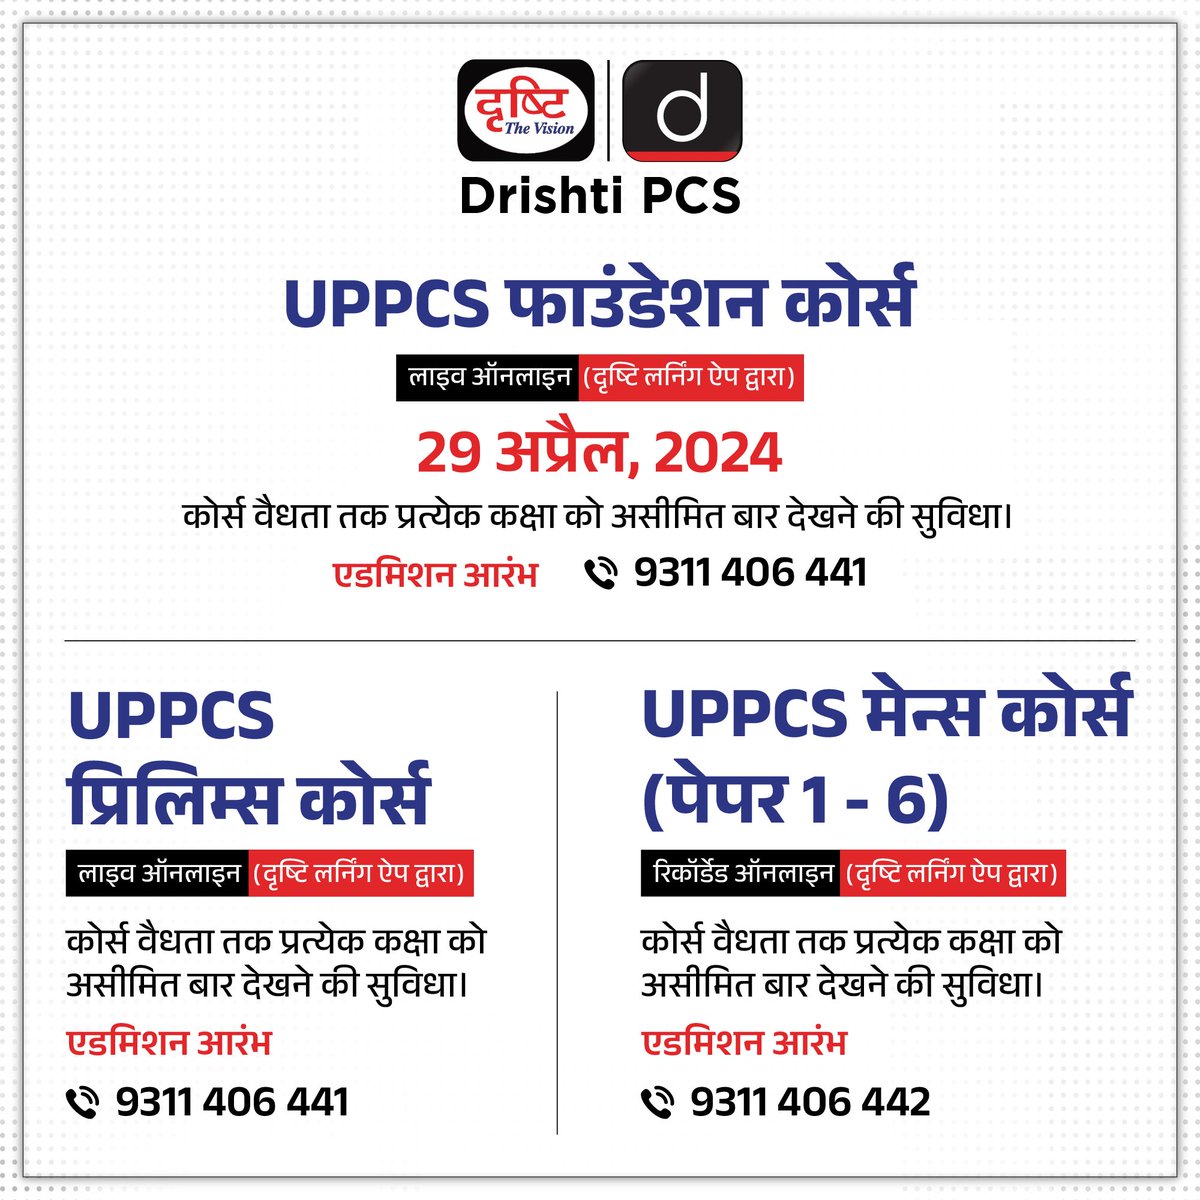 UPPCS के ऑनलाइन कोर्सेज़ एडमिशन ओपन कोर्स से संबंधित विस्तृत जानकारी या एडमिशन के लिये क्लिक करें इस लिंक पर: drishti.xyz/Hindi-Online-C… अथवा संपर्क करें: 9311406441 #UPPCS #Foundationbatch #Prelims #Mains #OnlineCourse #DrishtiPCS